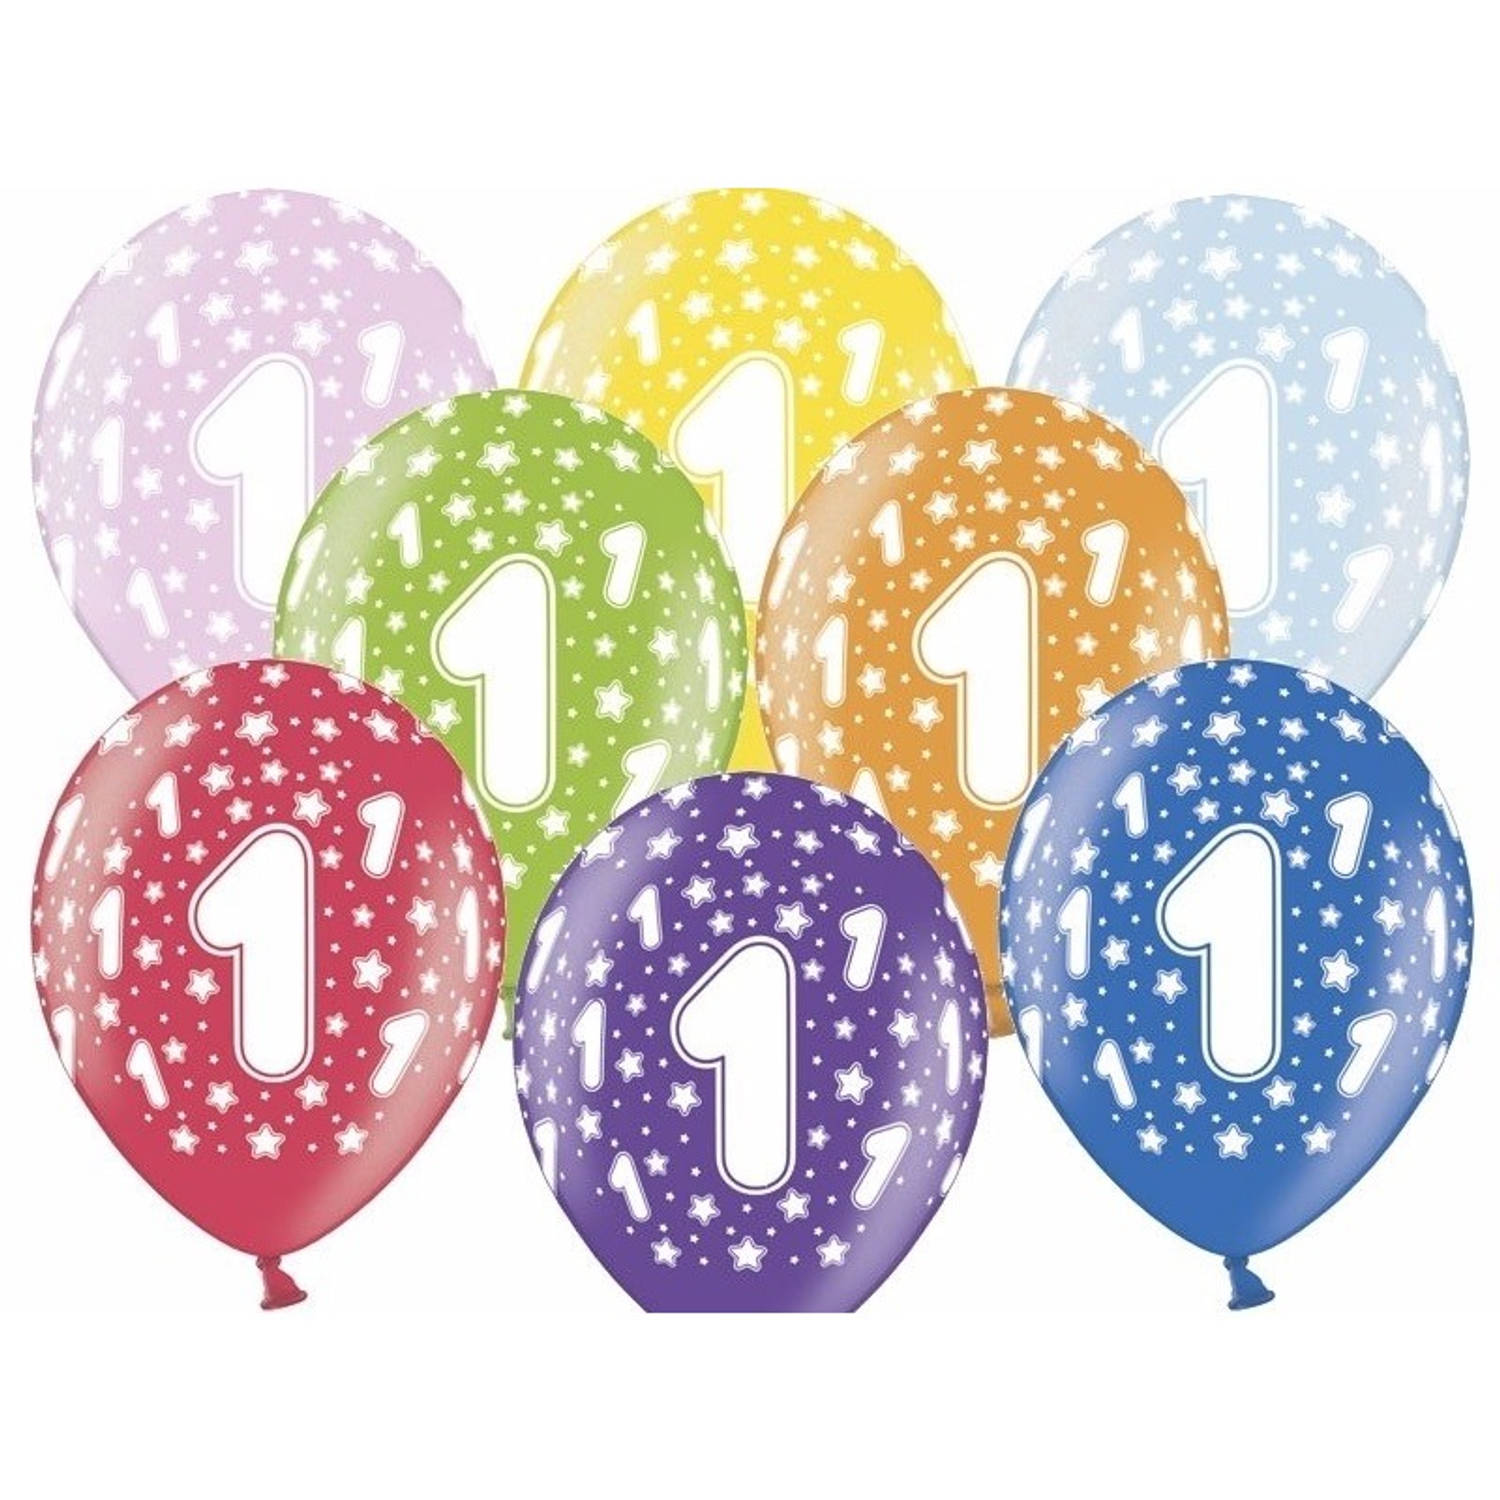 12x stuks verjaardag ballonnen 1 jaar thema met sterretjes - Ballonnen